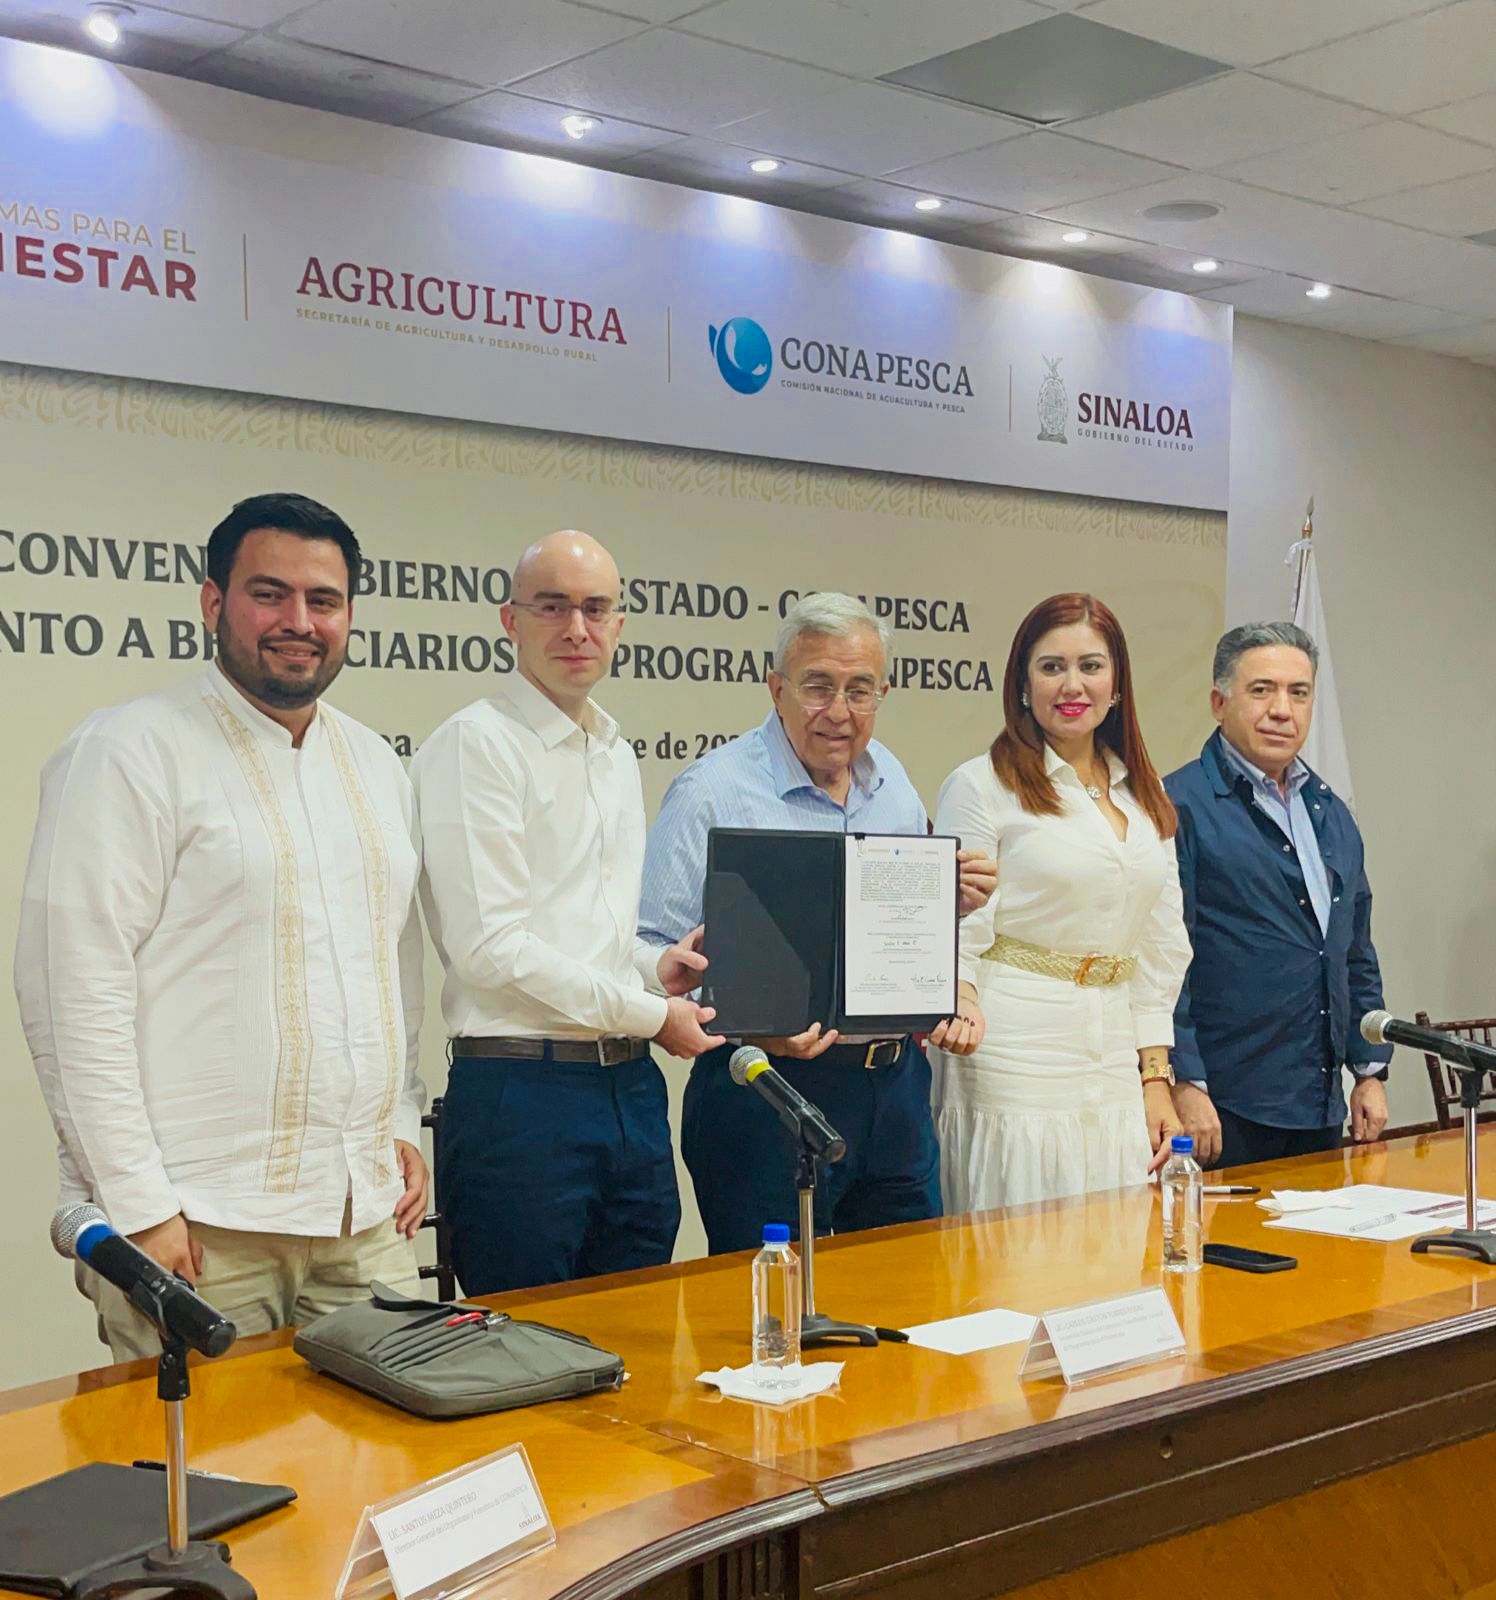 Benefician a pescadores y acuicultores de Sinaloa con convenio de colaboración entre Conapesca y Gobierno del Estado

